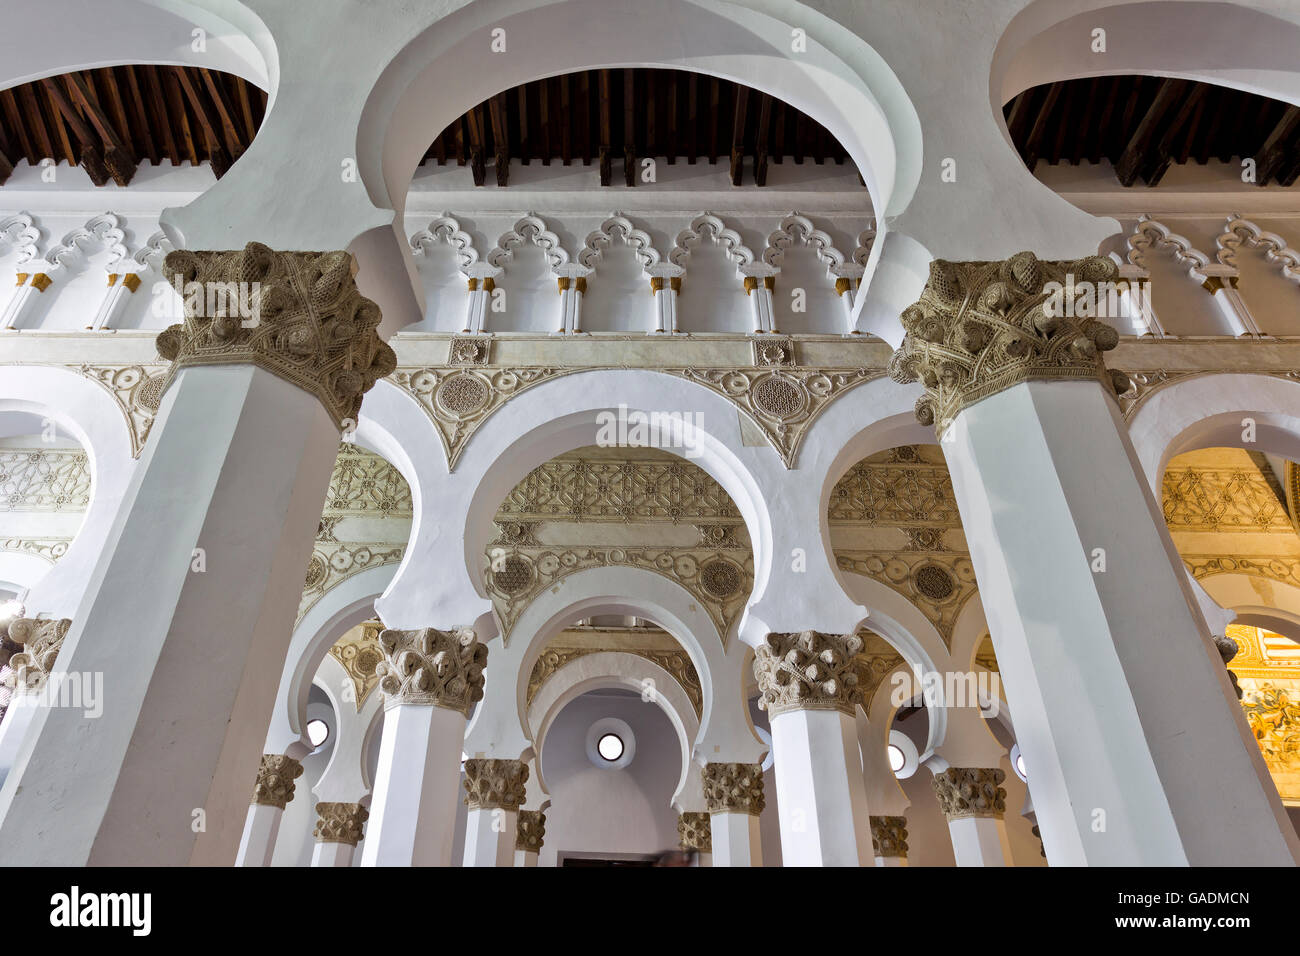 Archi Mudejar all'interno della sinagoga di Santa Maria la Blanca a Toledo, Spagna. La sinagoga risale al 13 ° secolo. Foto Stock